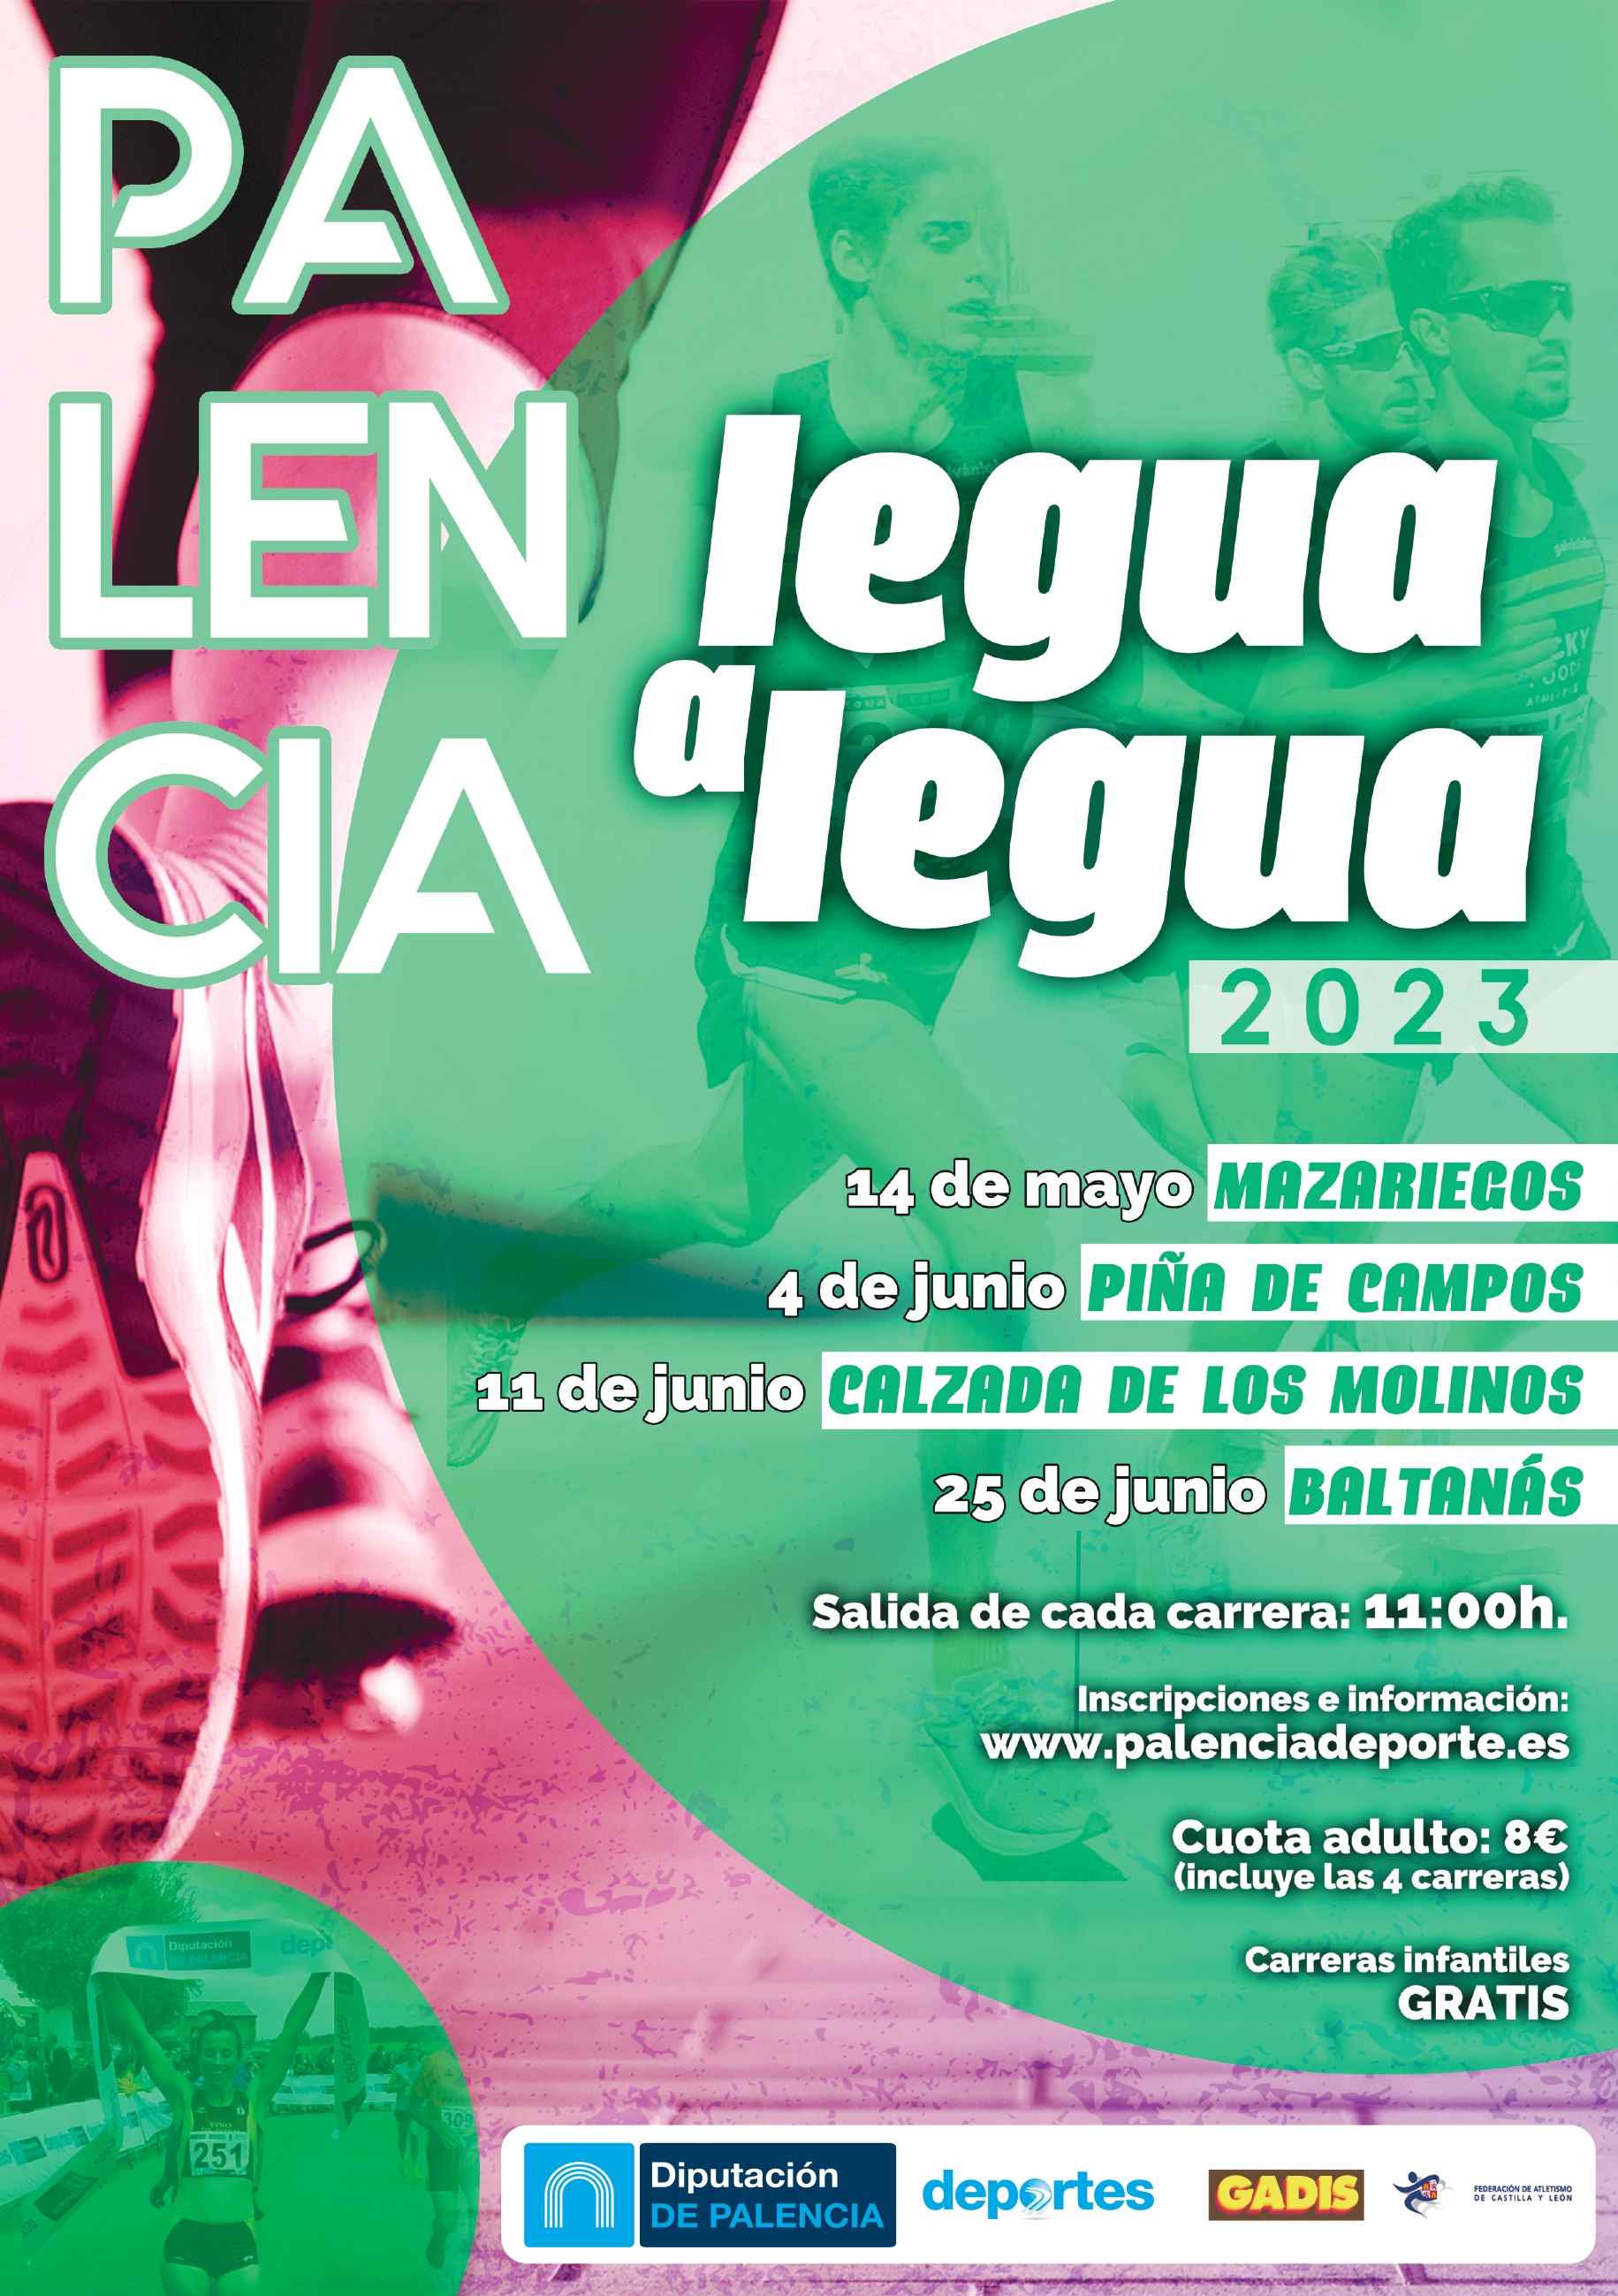 Event Poster PIÑA DE CAMPOS PALENCIA LEGUA A LEGUA 2023